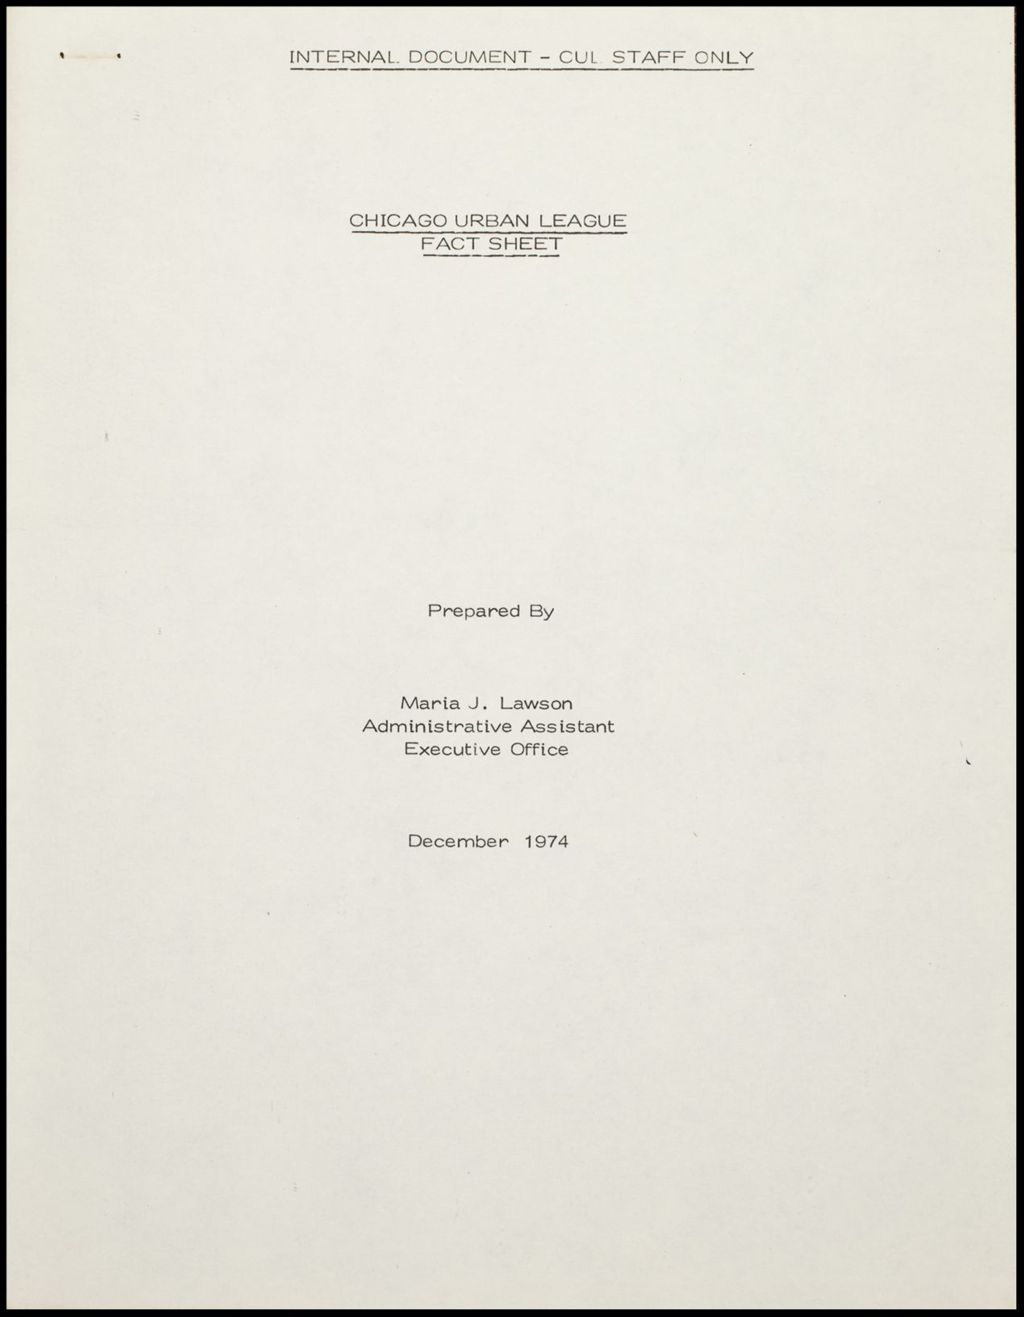 Miniature of CUL Fact Sheet, 1974 (Folder IV-721)